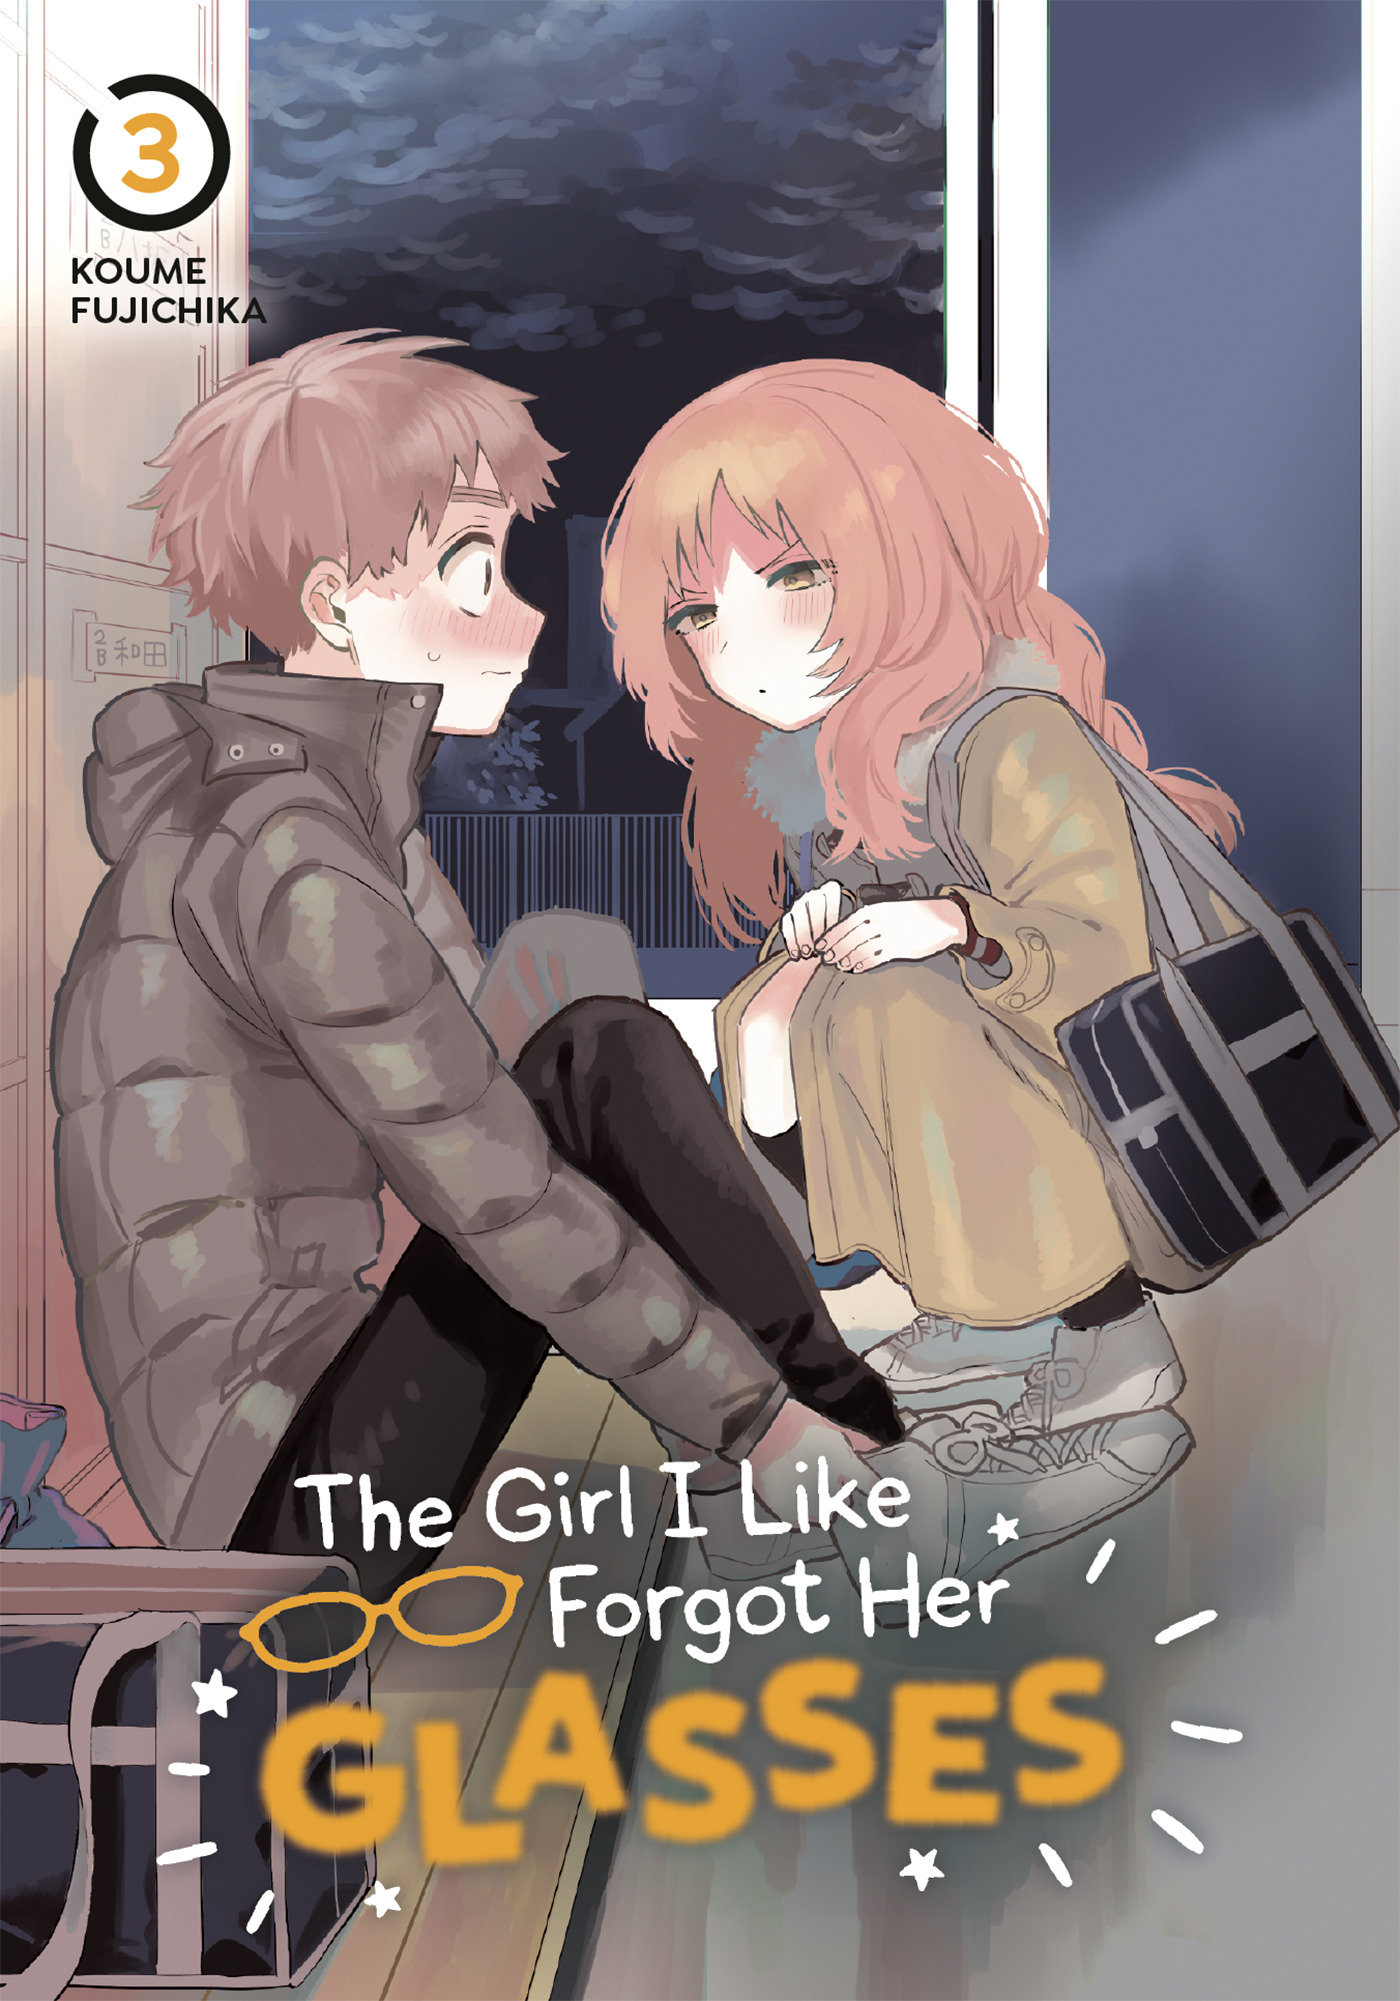 The Girl I Like Forgot Her Glasses Manga Volume 3